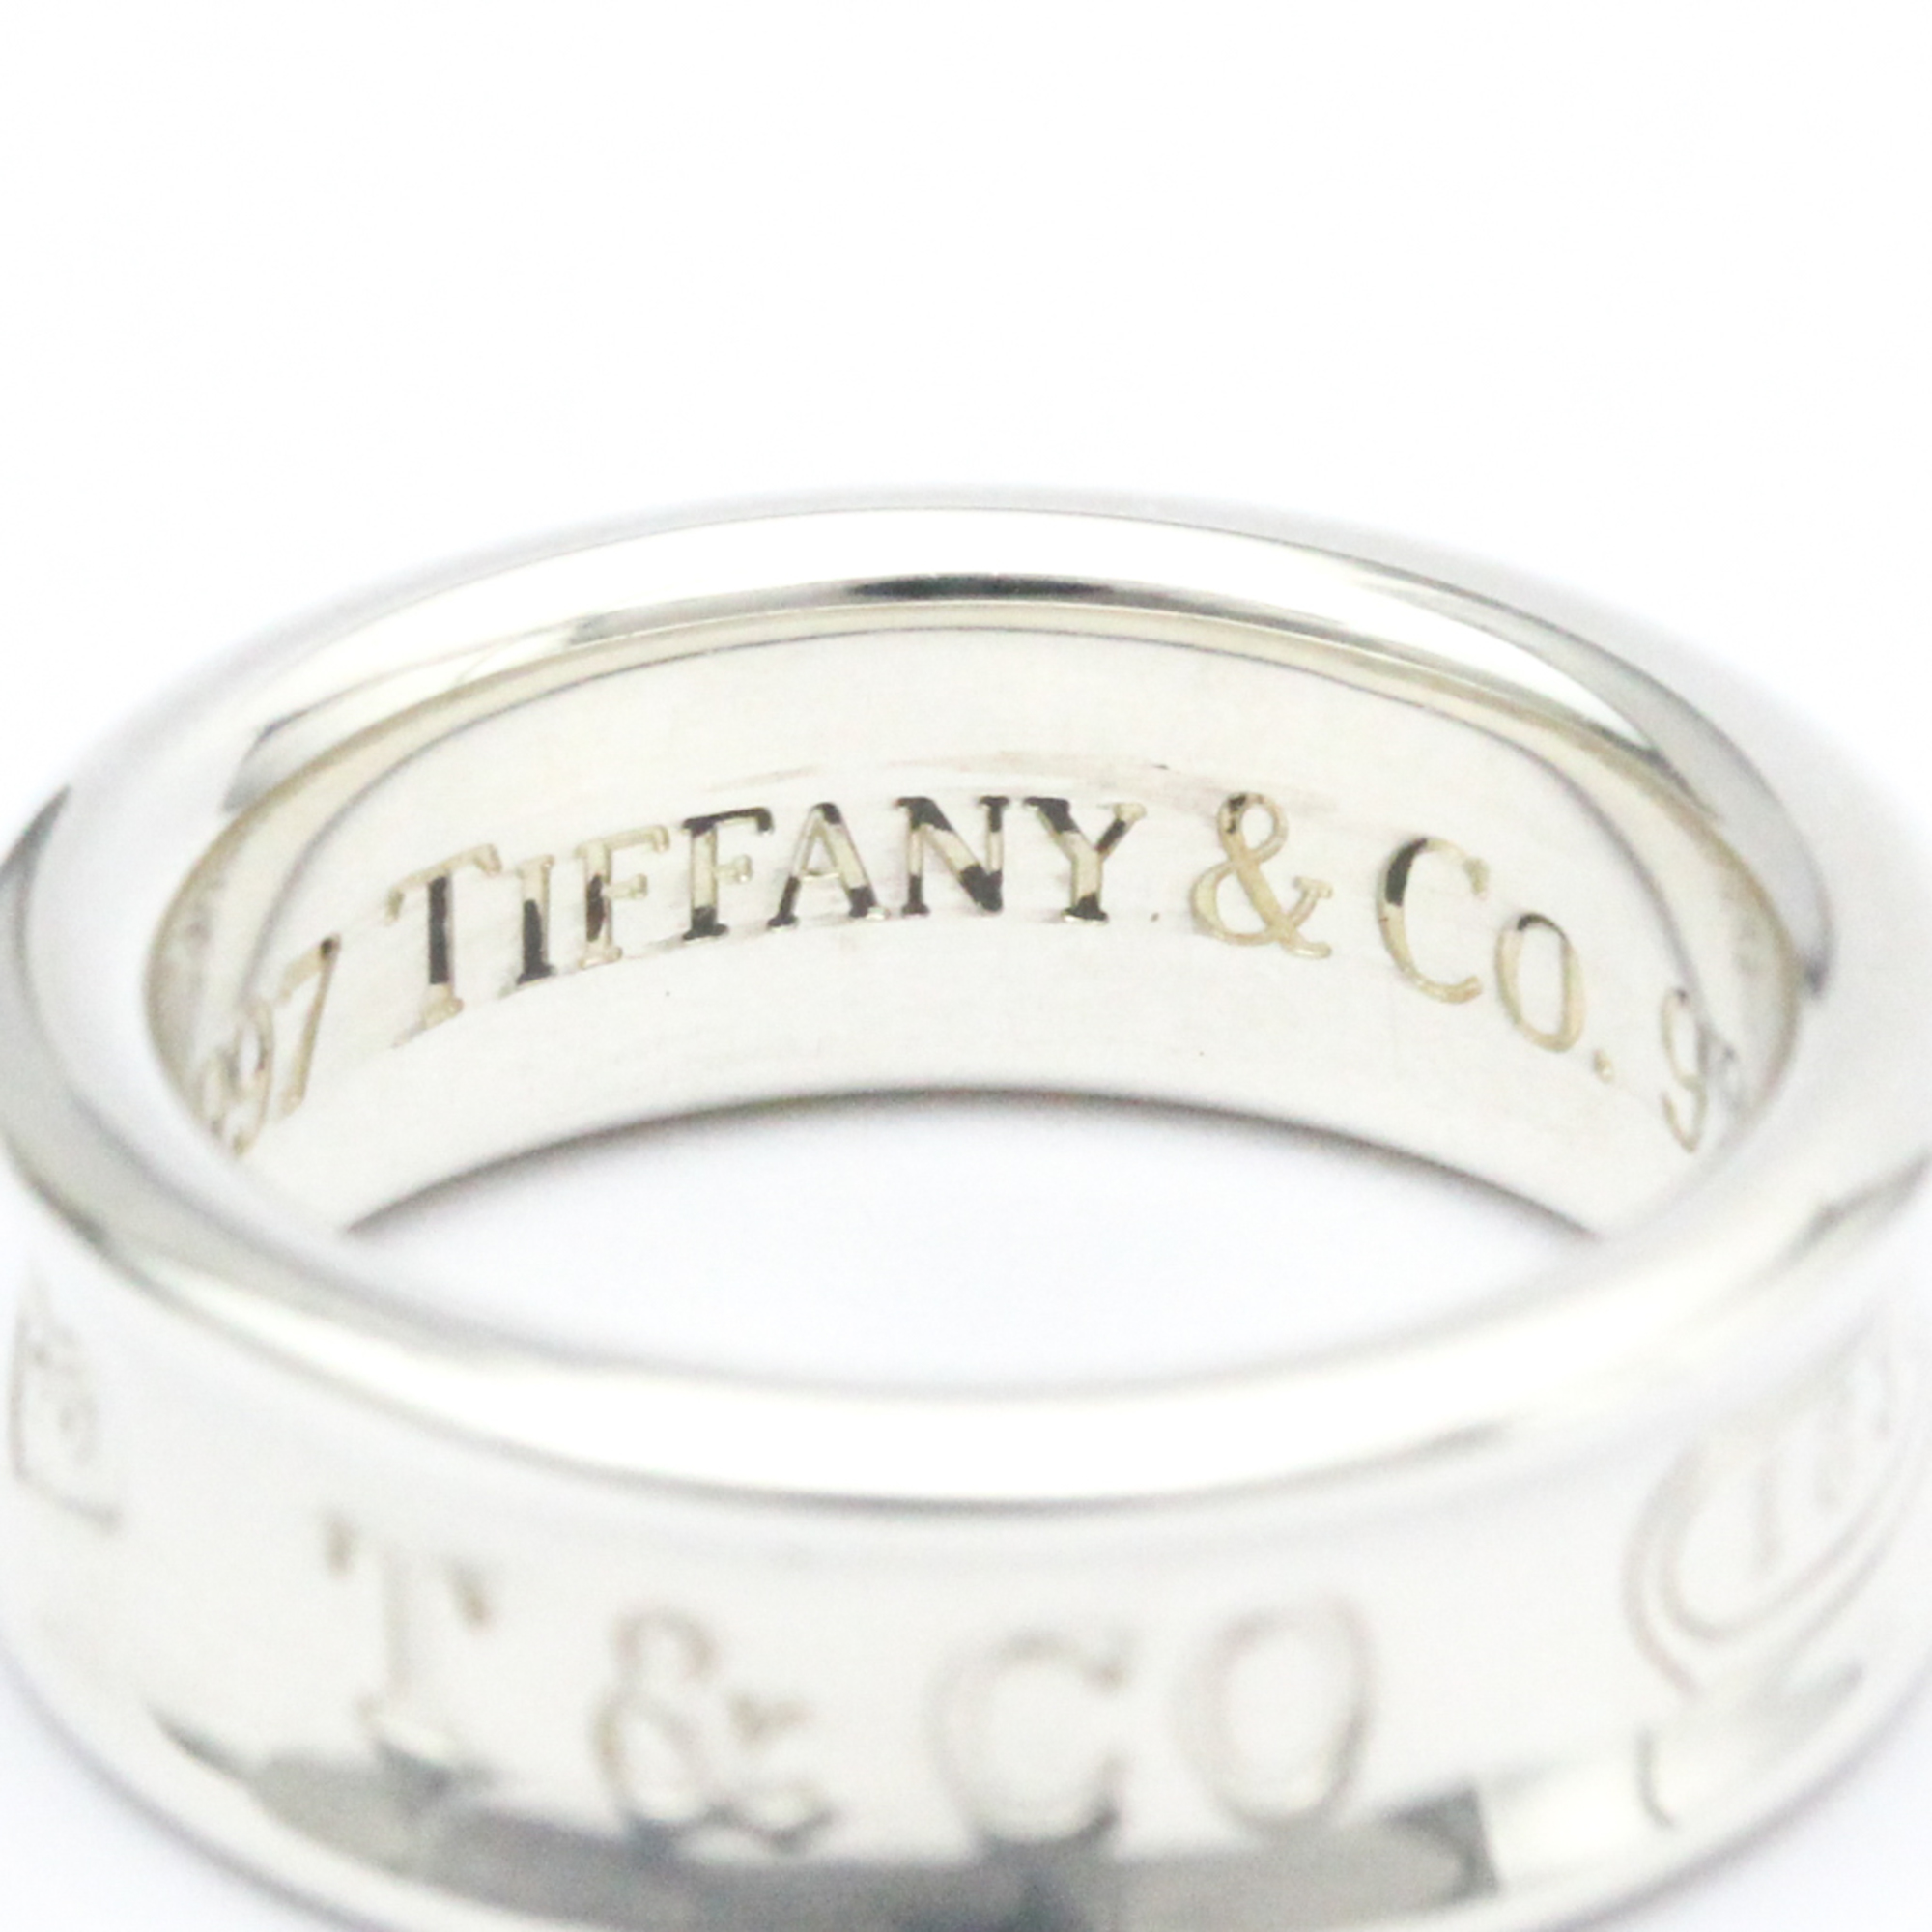 Tiffany 1837 Narrow Ring Silver 925 Fashion No Stone Band Ring Silver